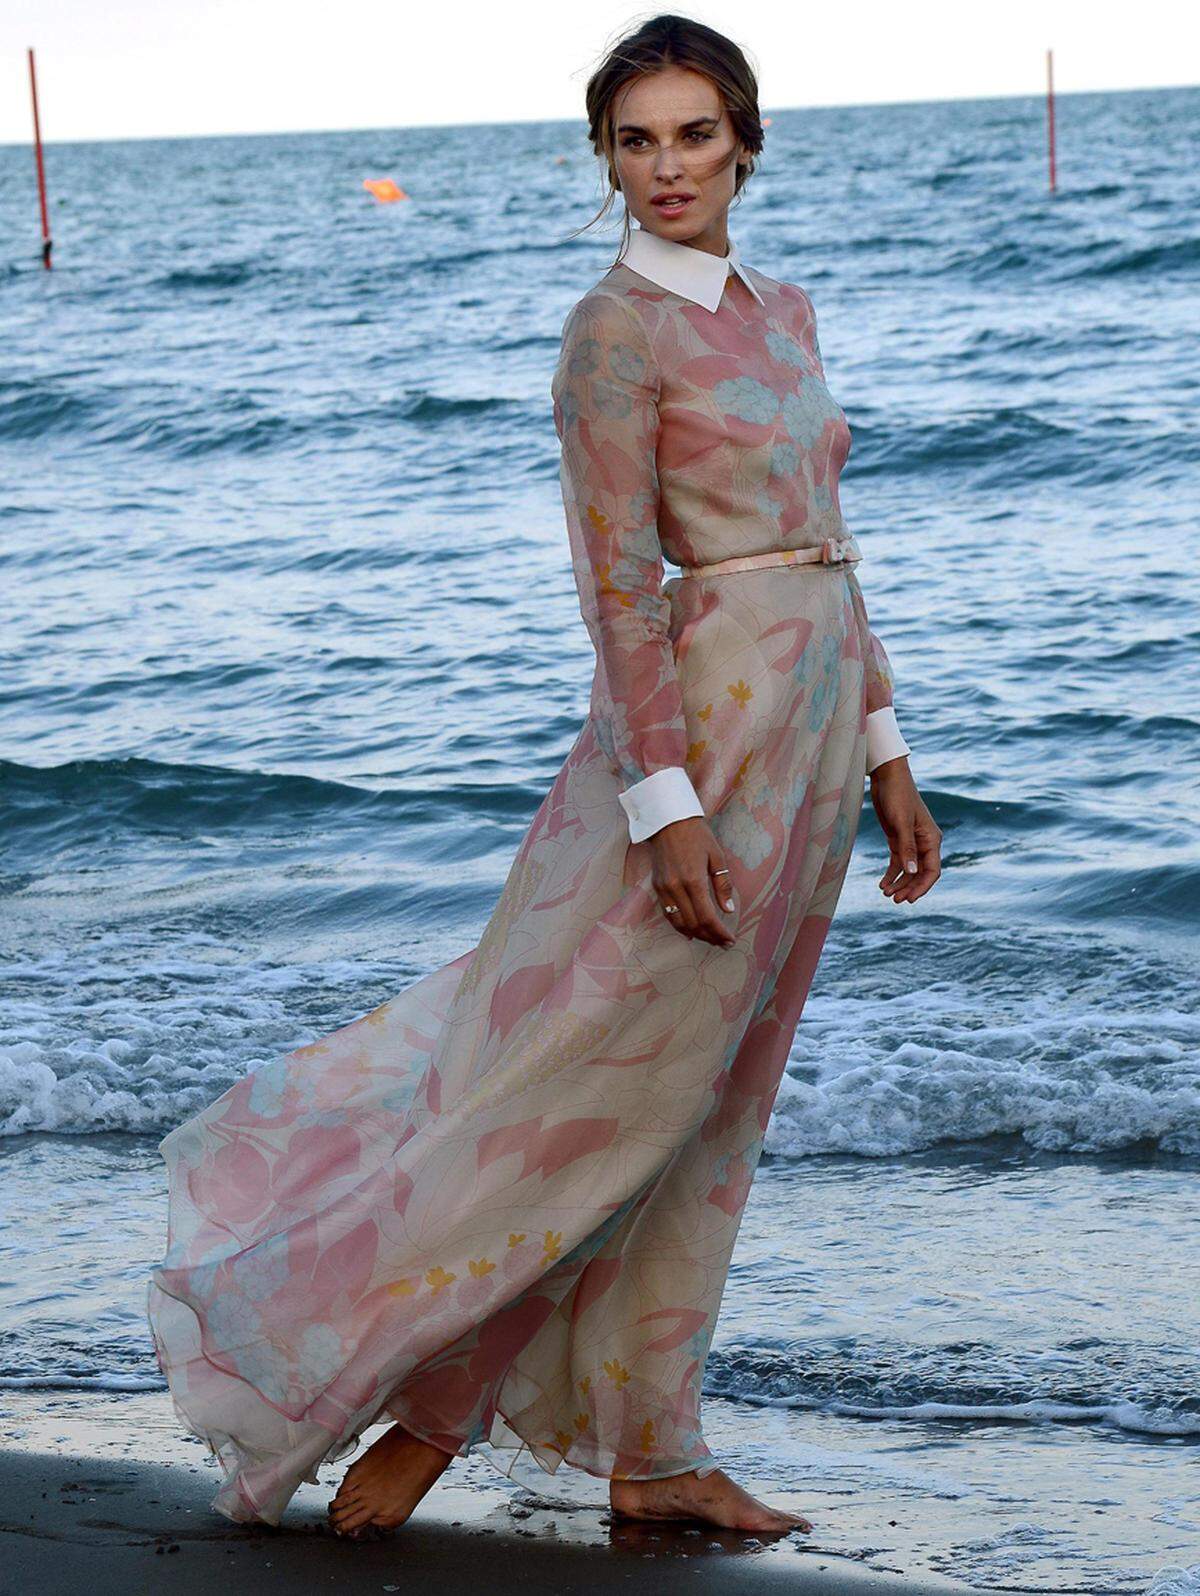 ... am Meer in einem Kleid von Valentino ...